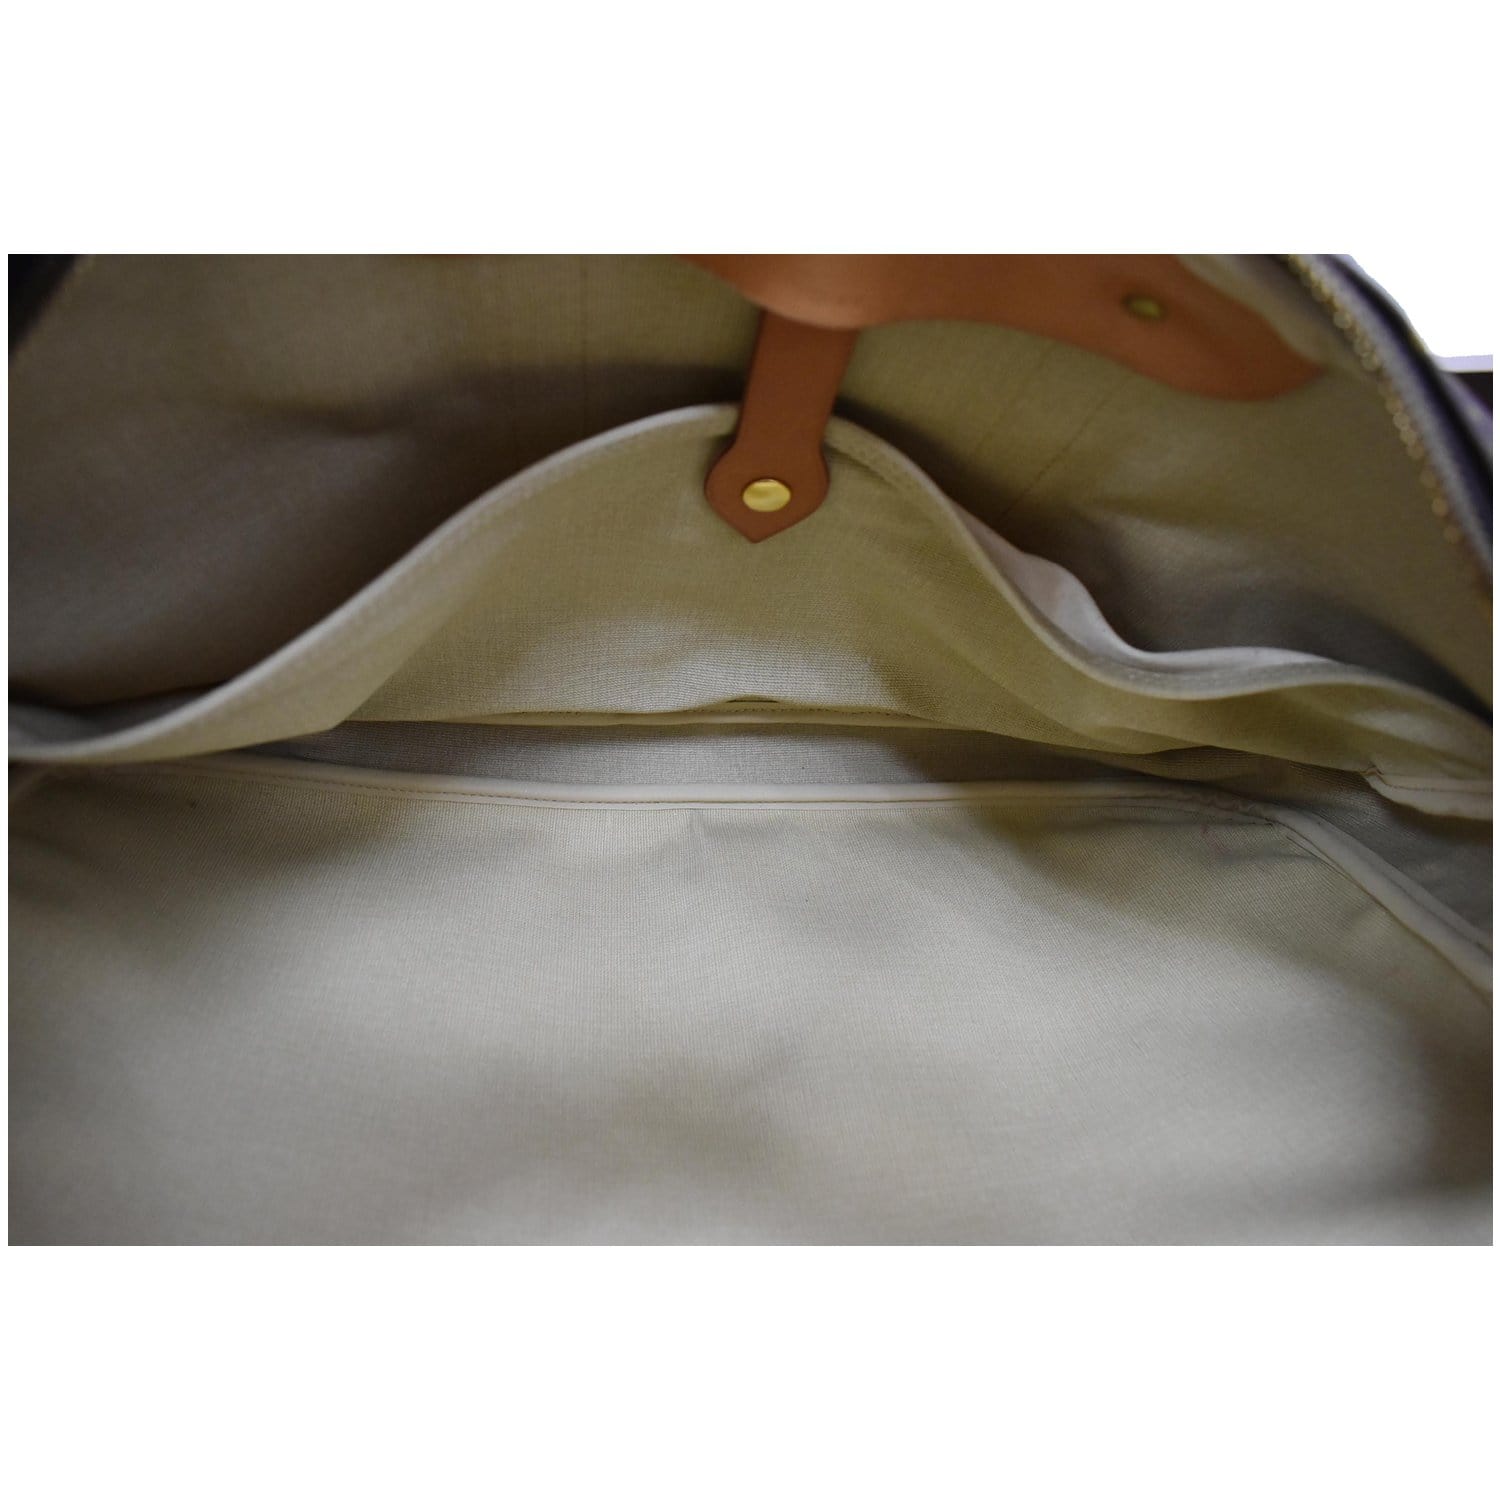 Authentic LOUIS VUITTON Sirius 50 Monogram Suitcase Travel Business Bag  #50498